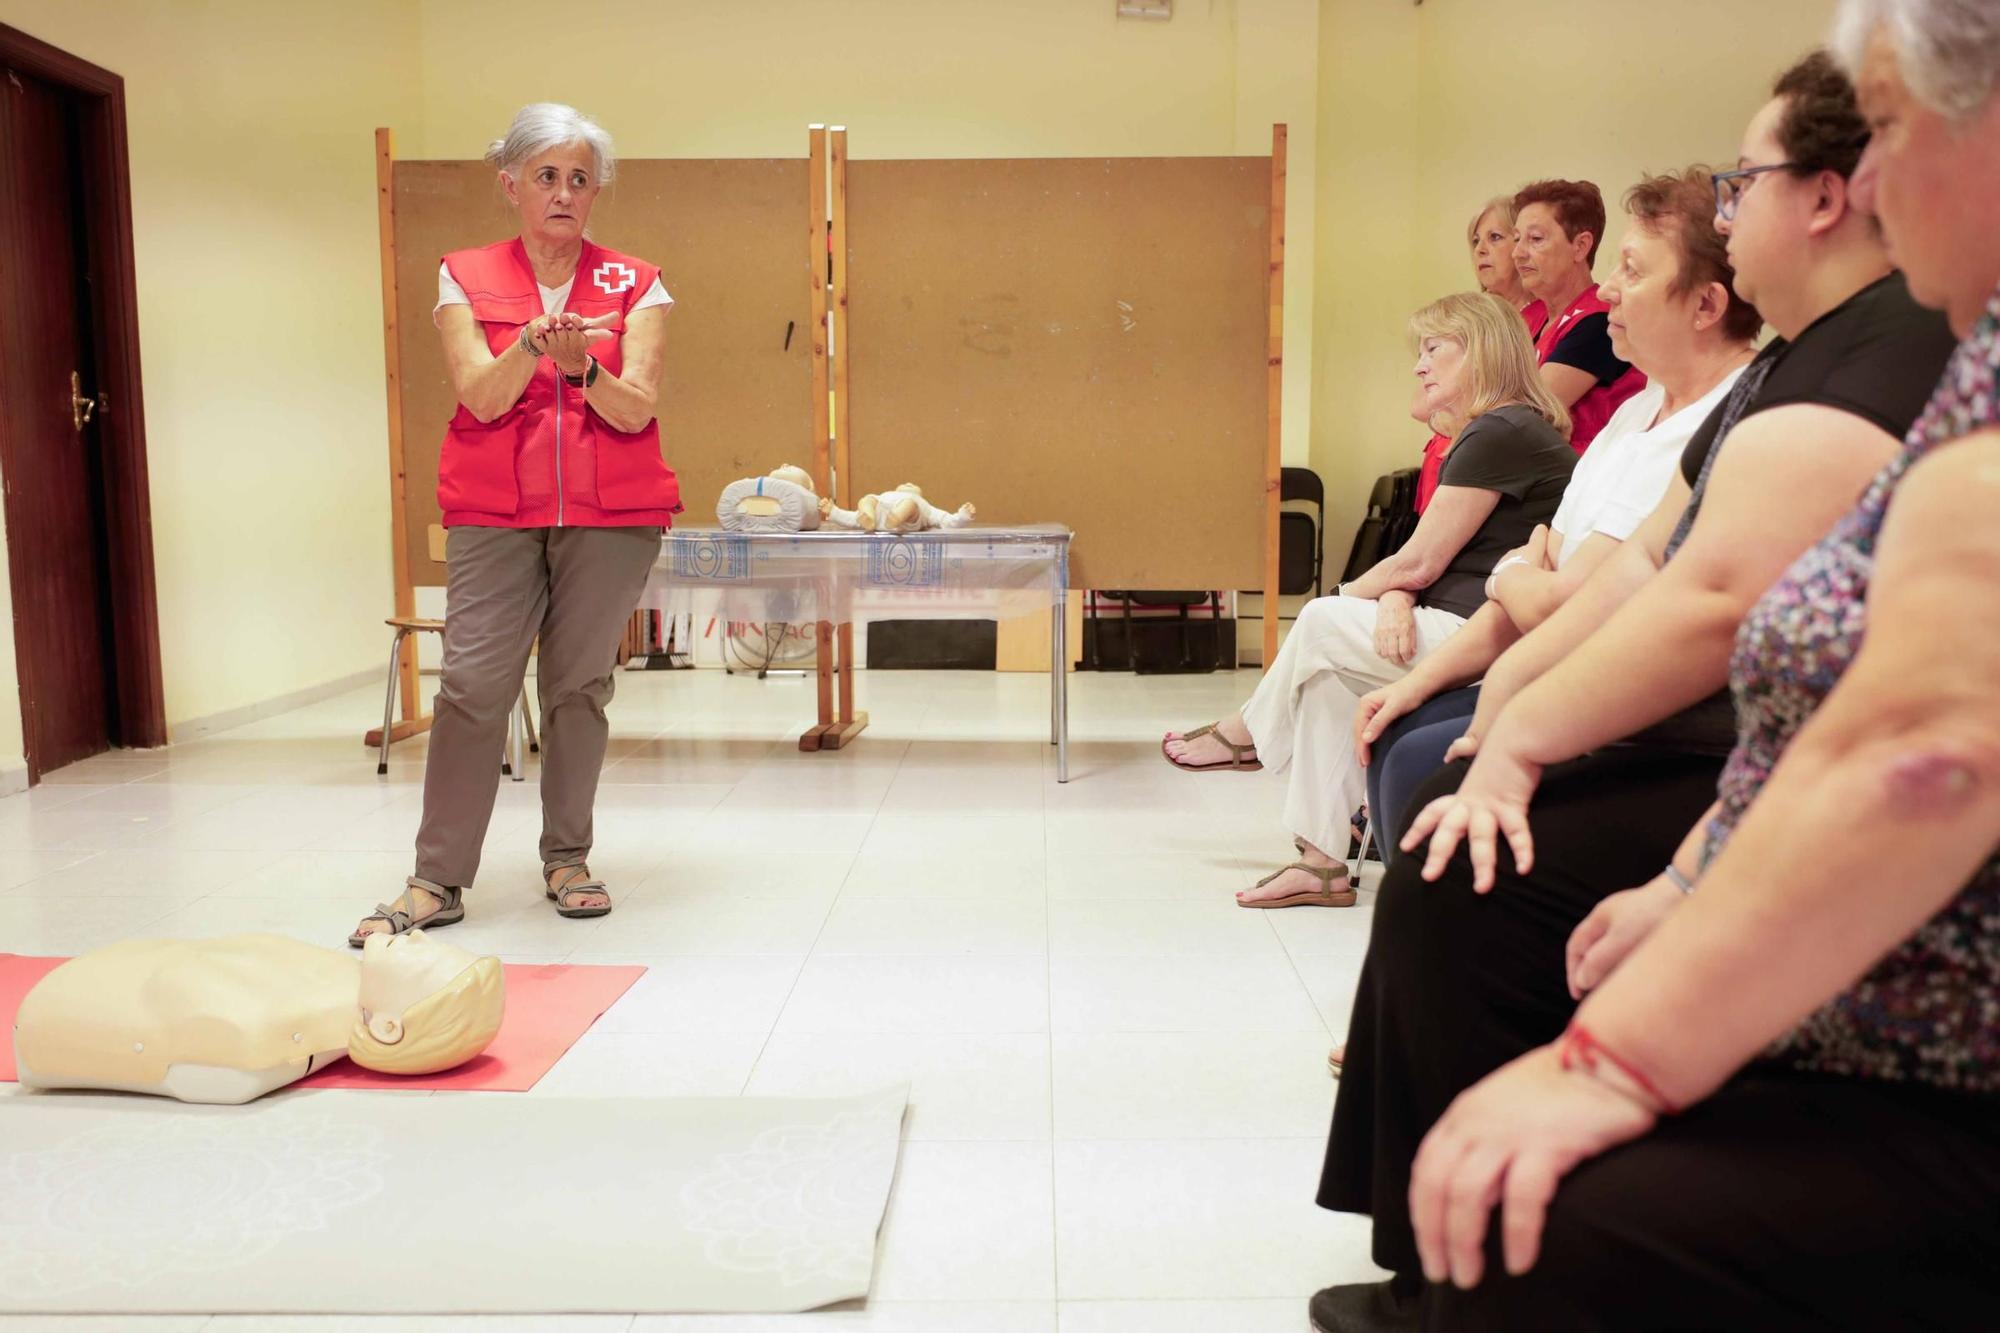 Les millors imatges del taller de primers auxilis a l’AAVV Séquia Major de Vila-real